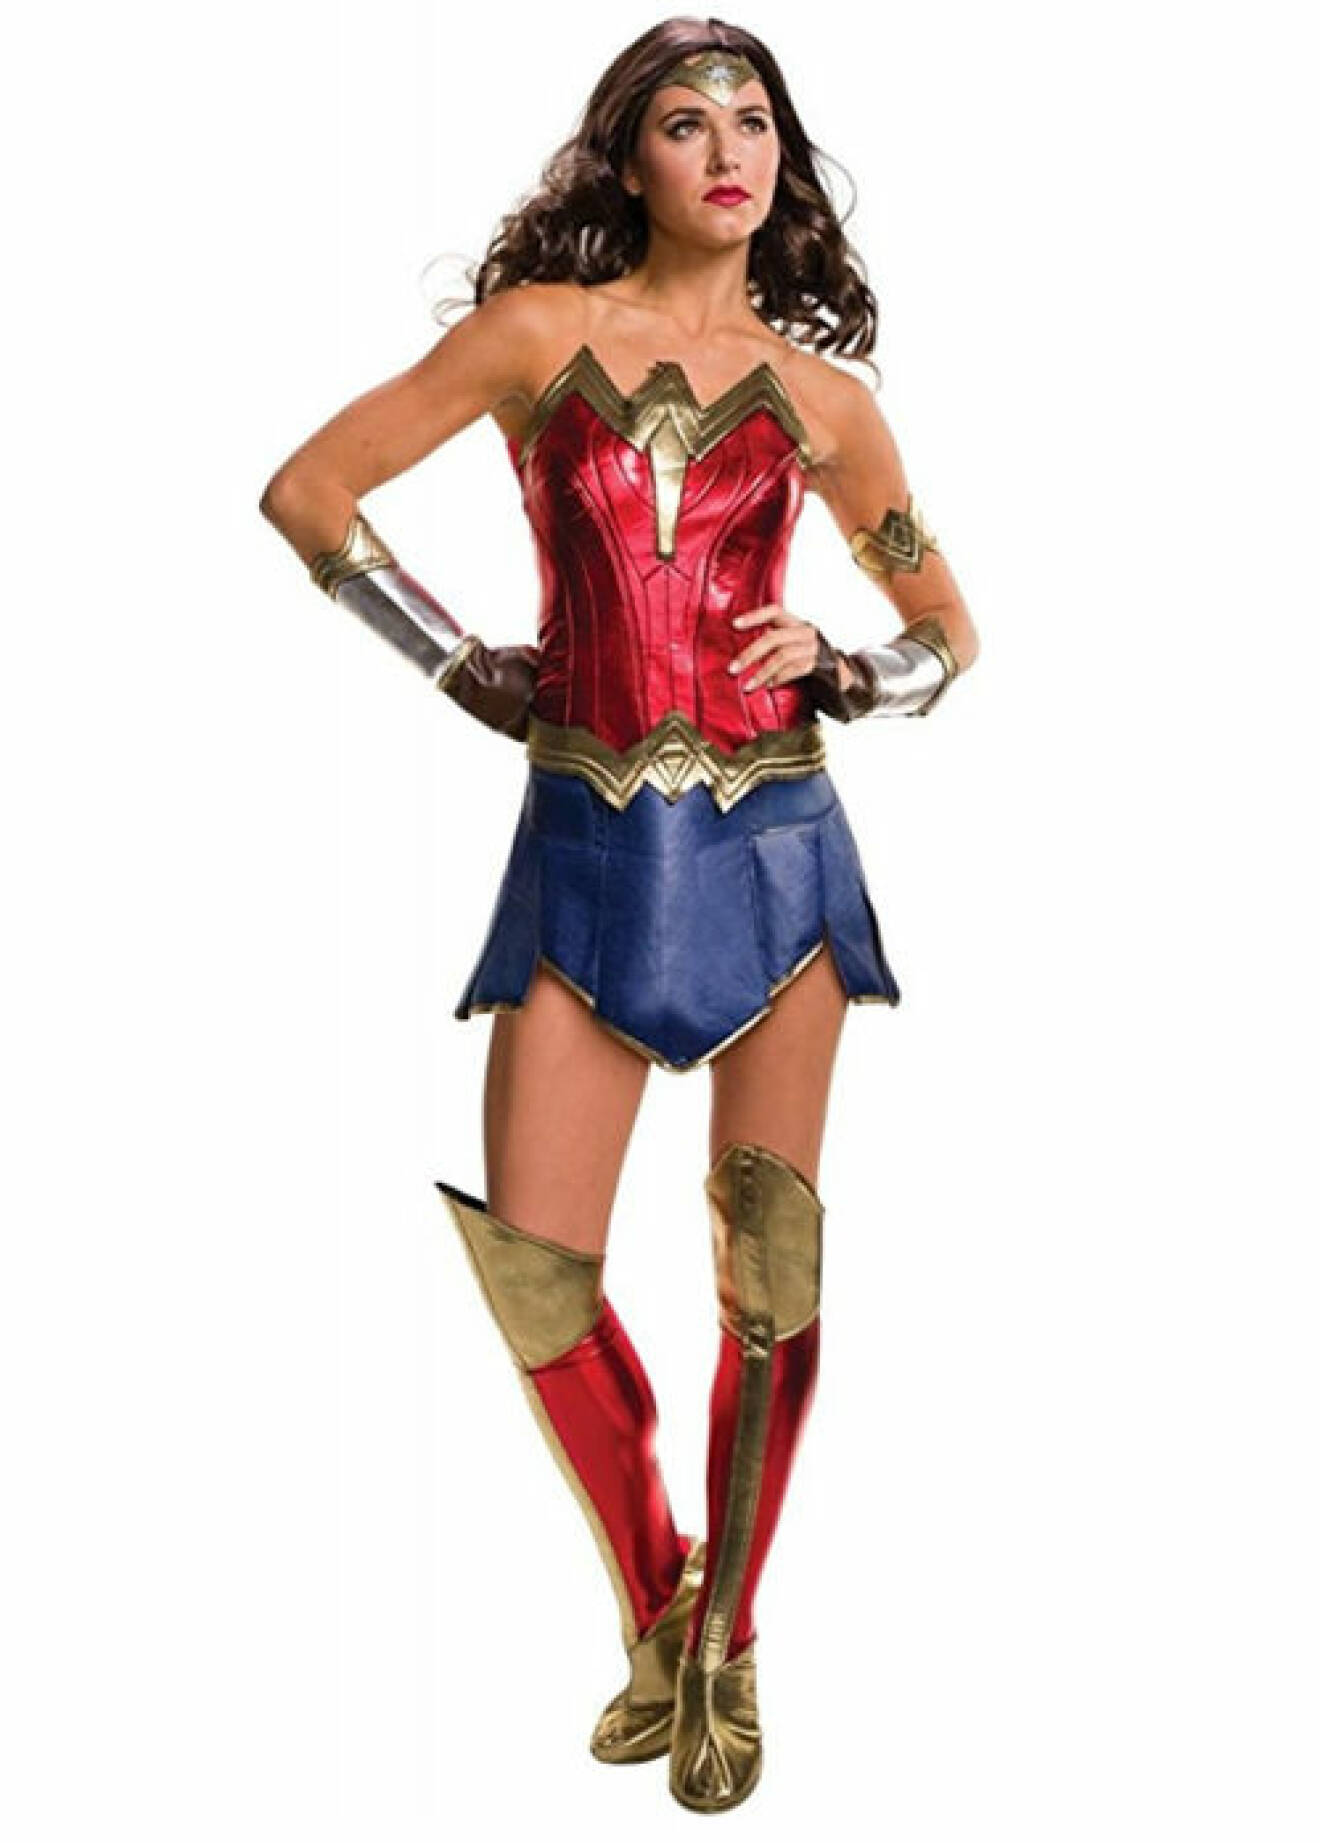 9. Gal Gadot krossade som superhjälte i Wonder woman – filmen som slog rekord efter rekord och hyllades av recensenterna. Kör dräkten här.